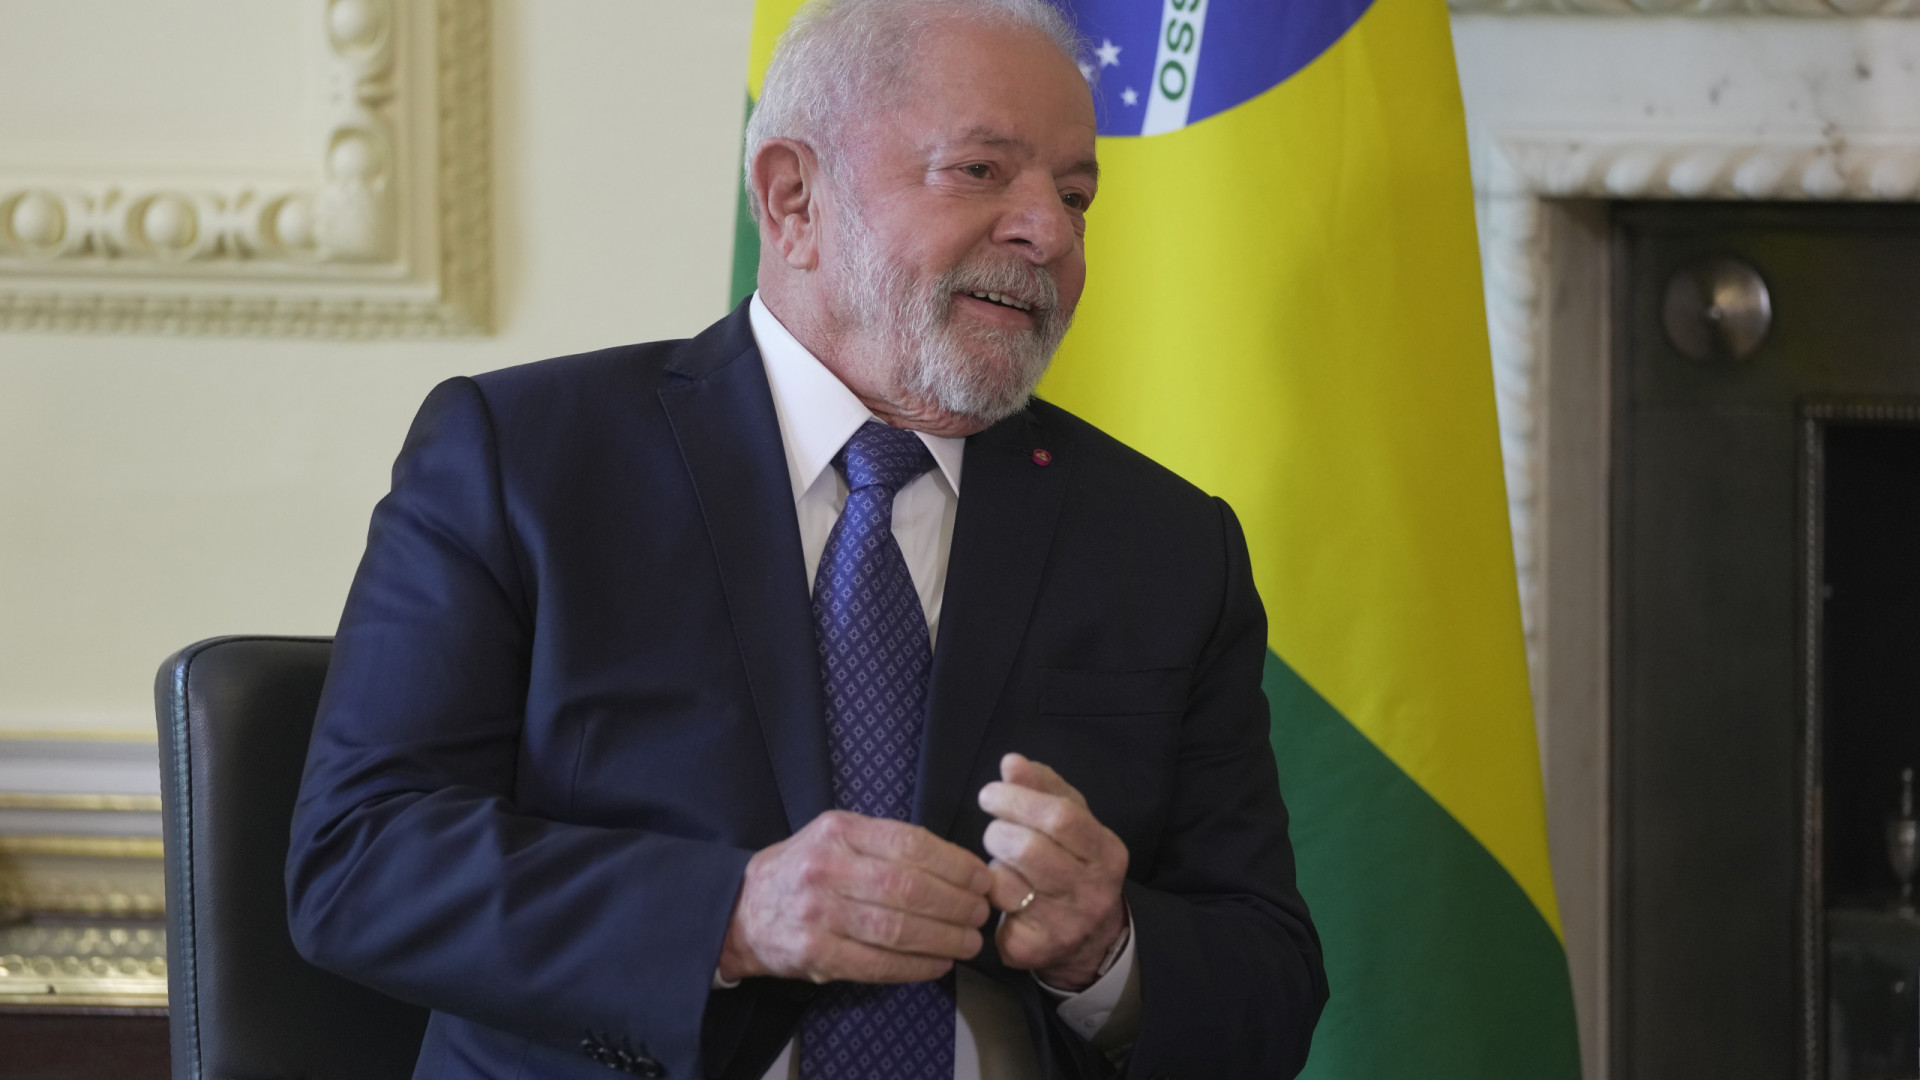 Clã Bolsonaro critica Lula por relação com ditaduras de esquerda